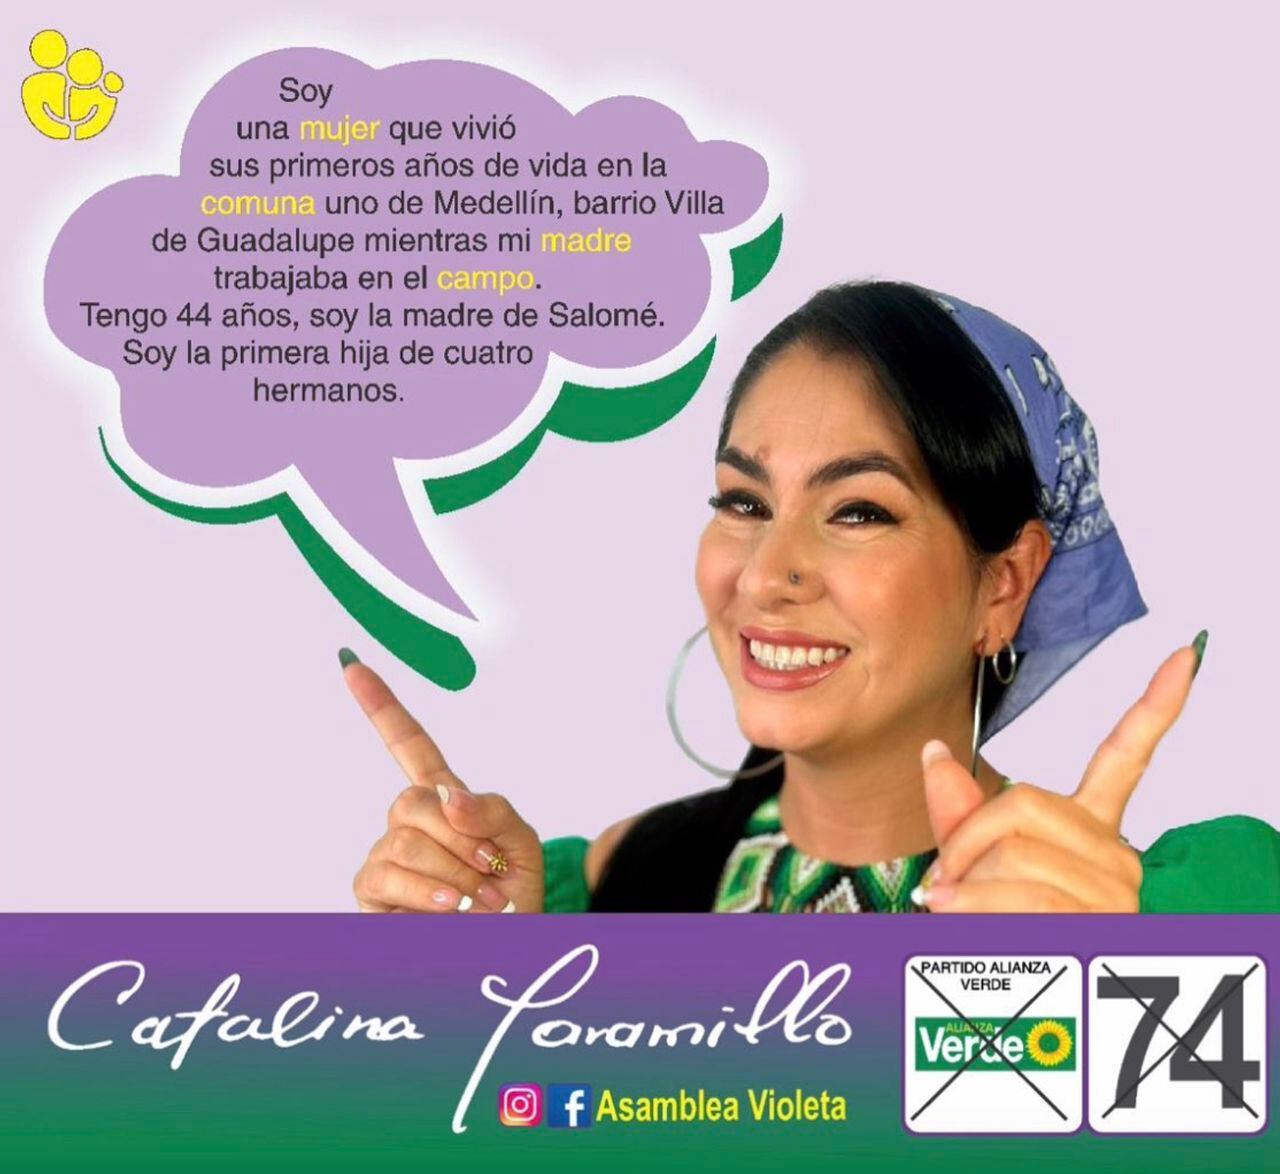 La campaña de Catalina Jaramillo.